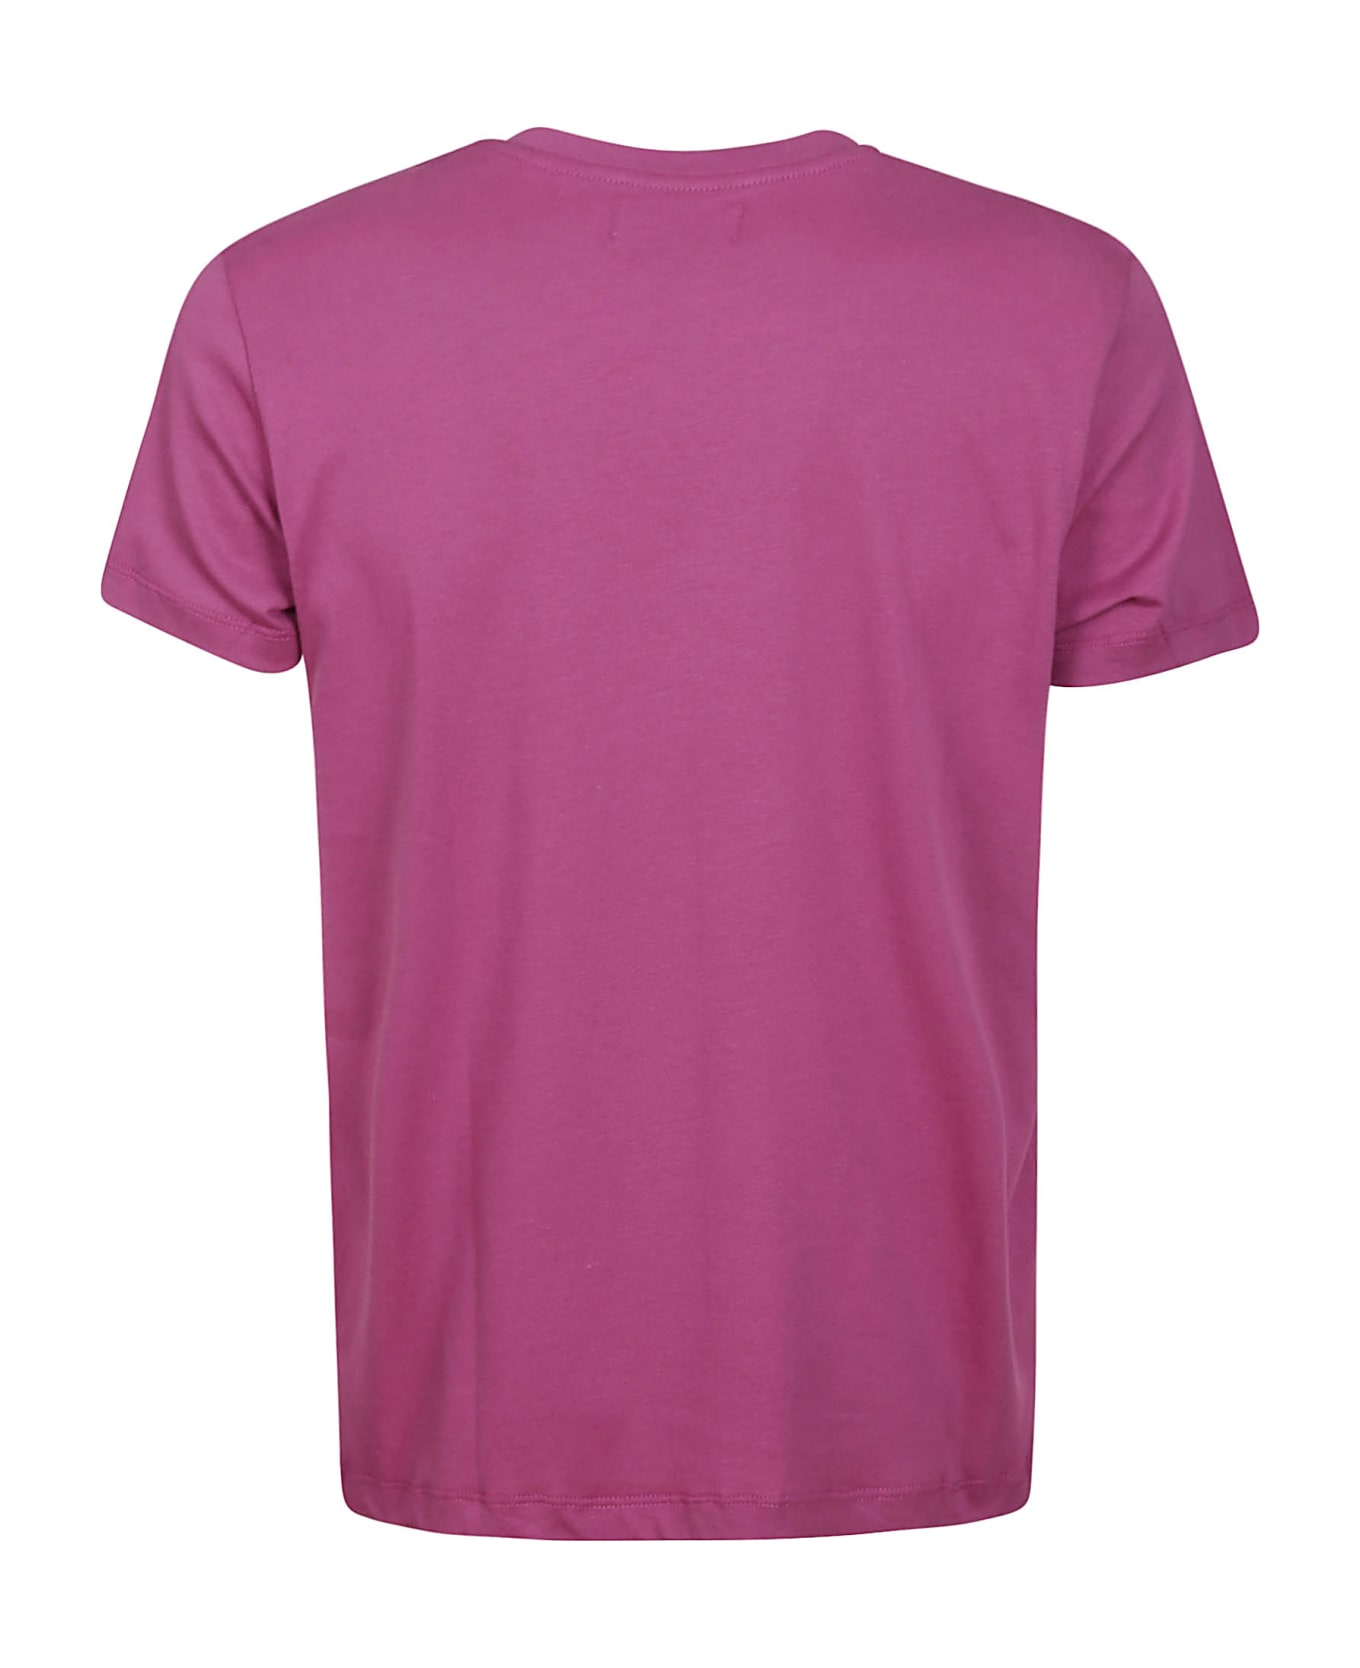 Vilebrequin T-shirt - Festival Fuchsia